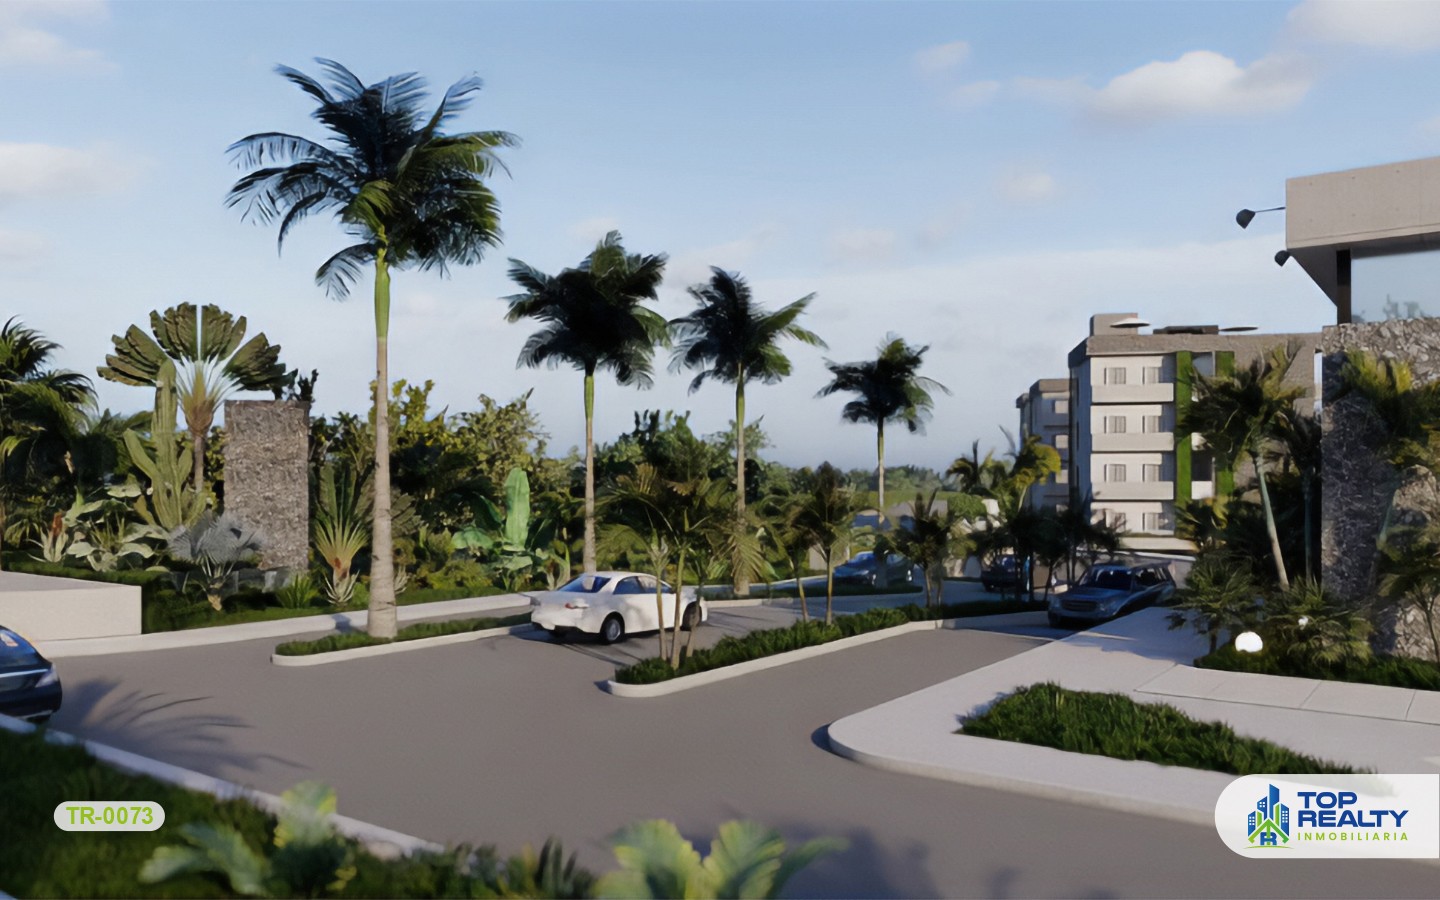 casas vacacionales y villas - TR-0073: ¡Vive en Punta Cana, un paraíso moderno rodeado de naturaleza! 7